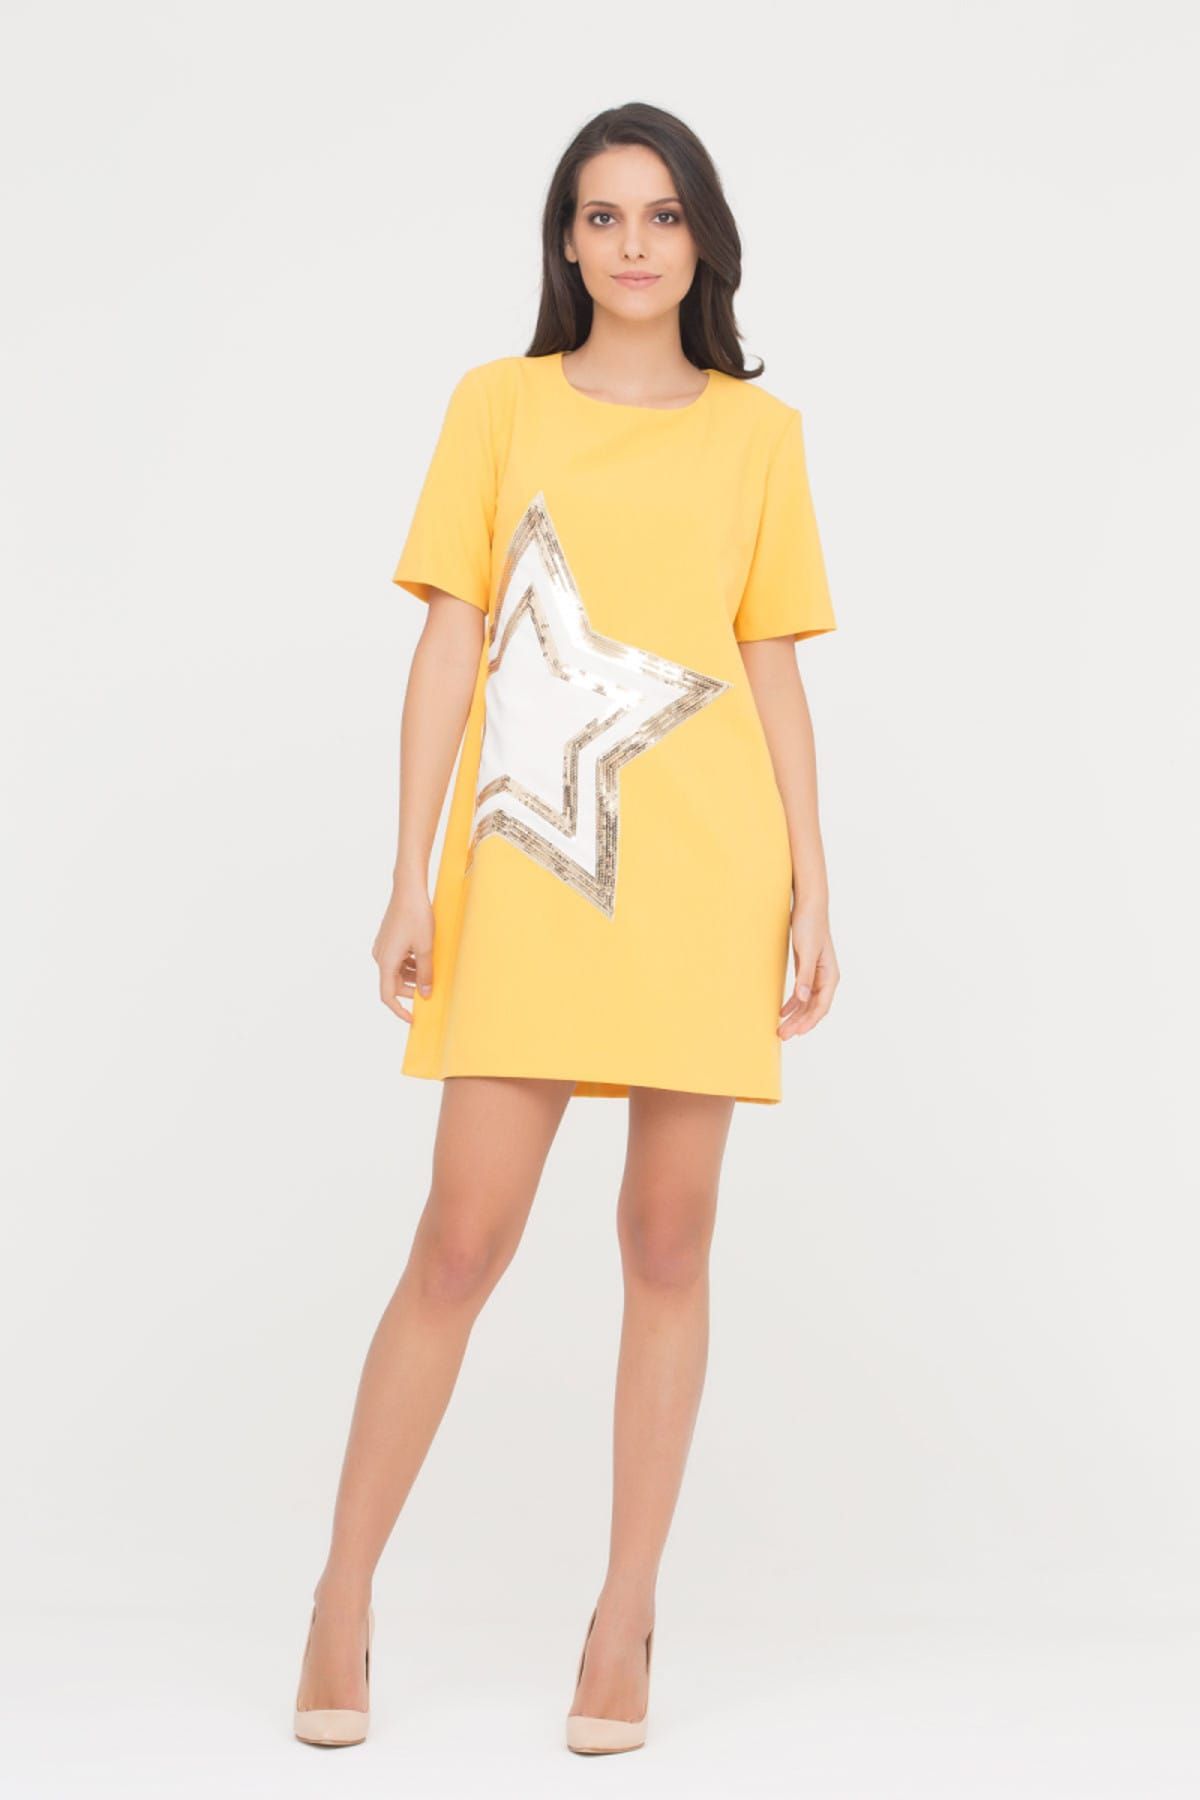 4G GIZIA Kadın Yıldız Baskı Sarı Elbise M17YEY2291UX9